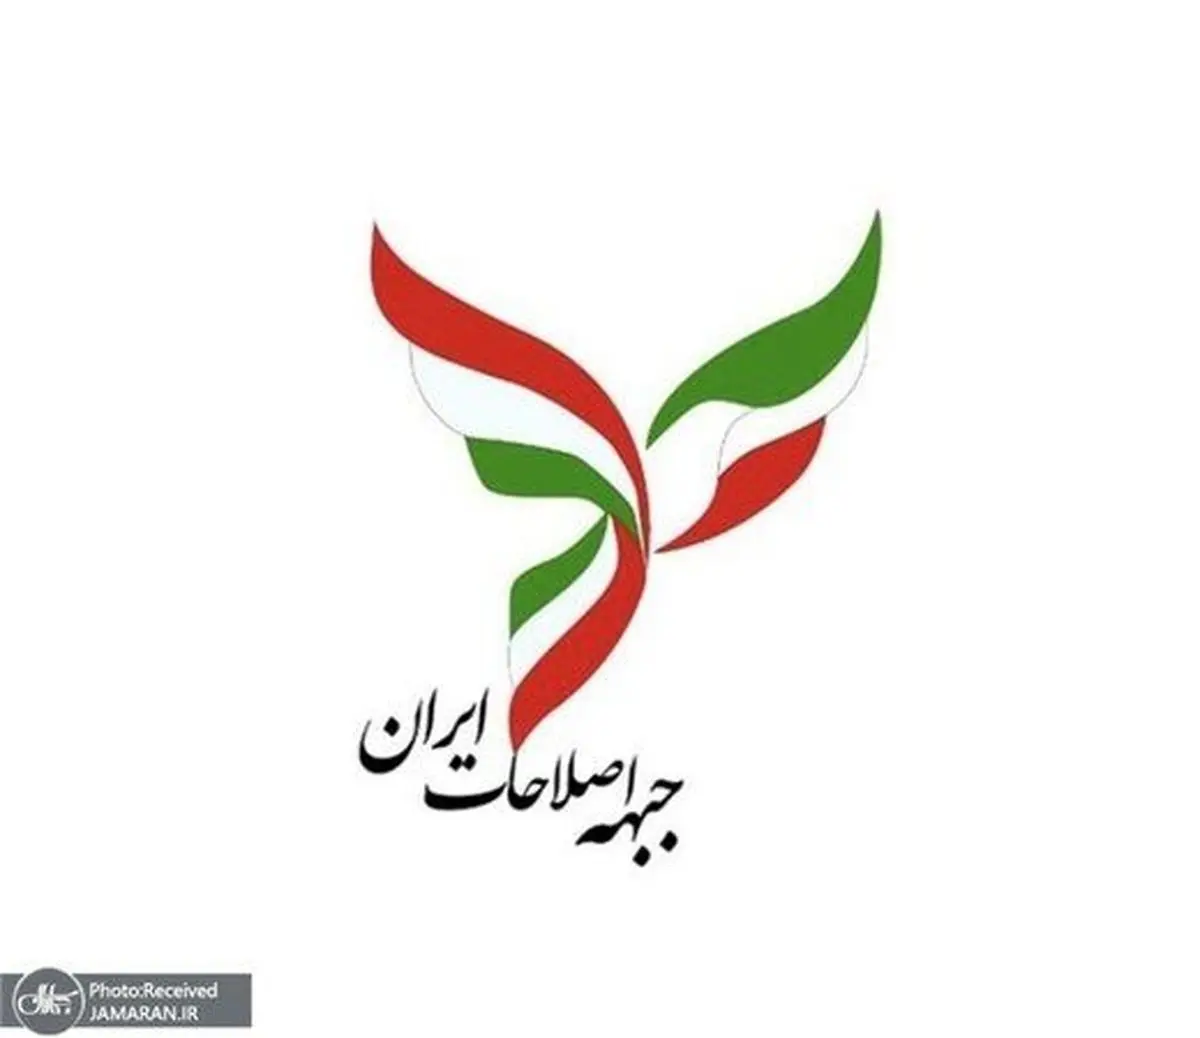 جبهه اصلاحات بیانیه صادر کرد | بیانیۀ جبهۀ اصلاحات ایران پیرامون اعتراضات اخیر